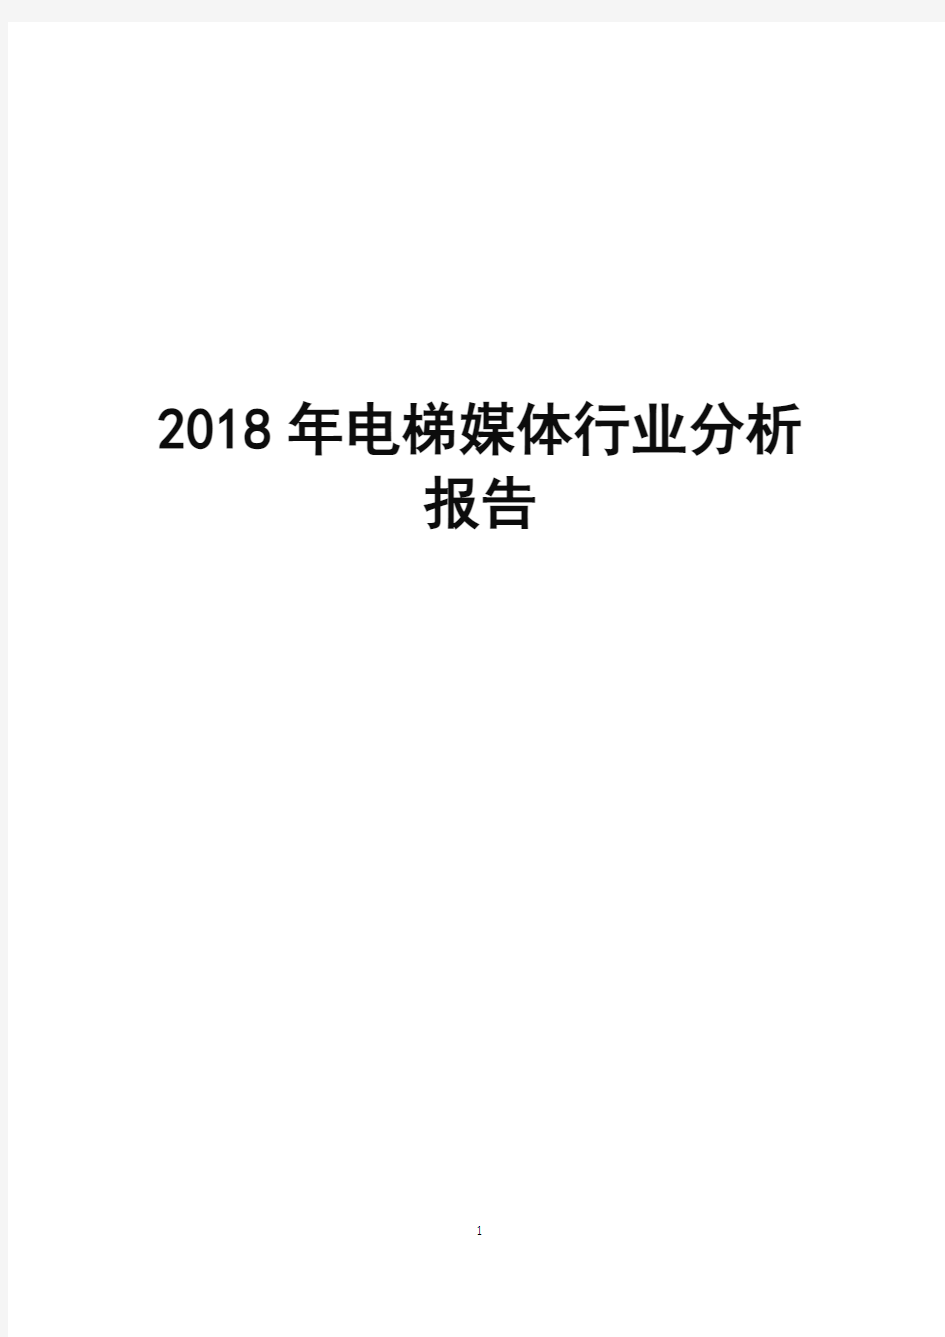 2018年电梯媒体行业分析报告